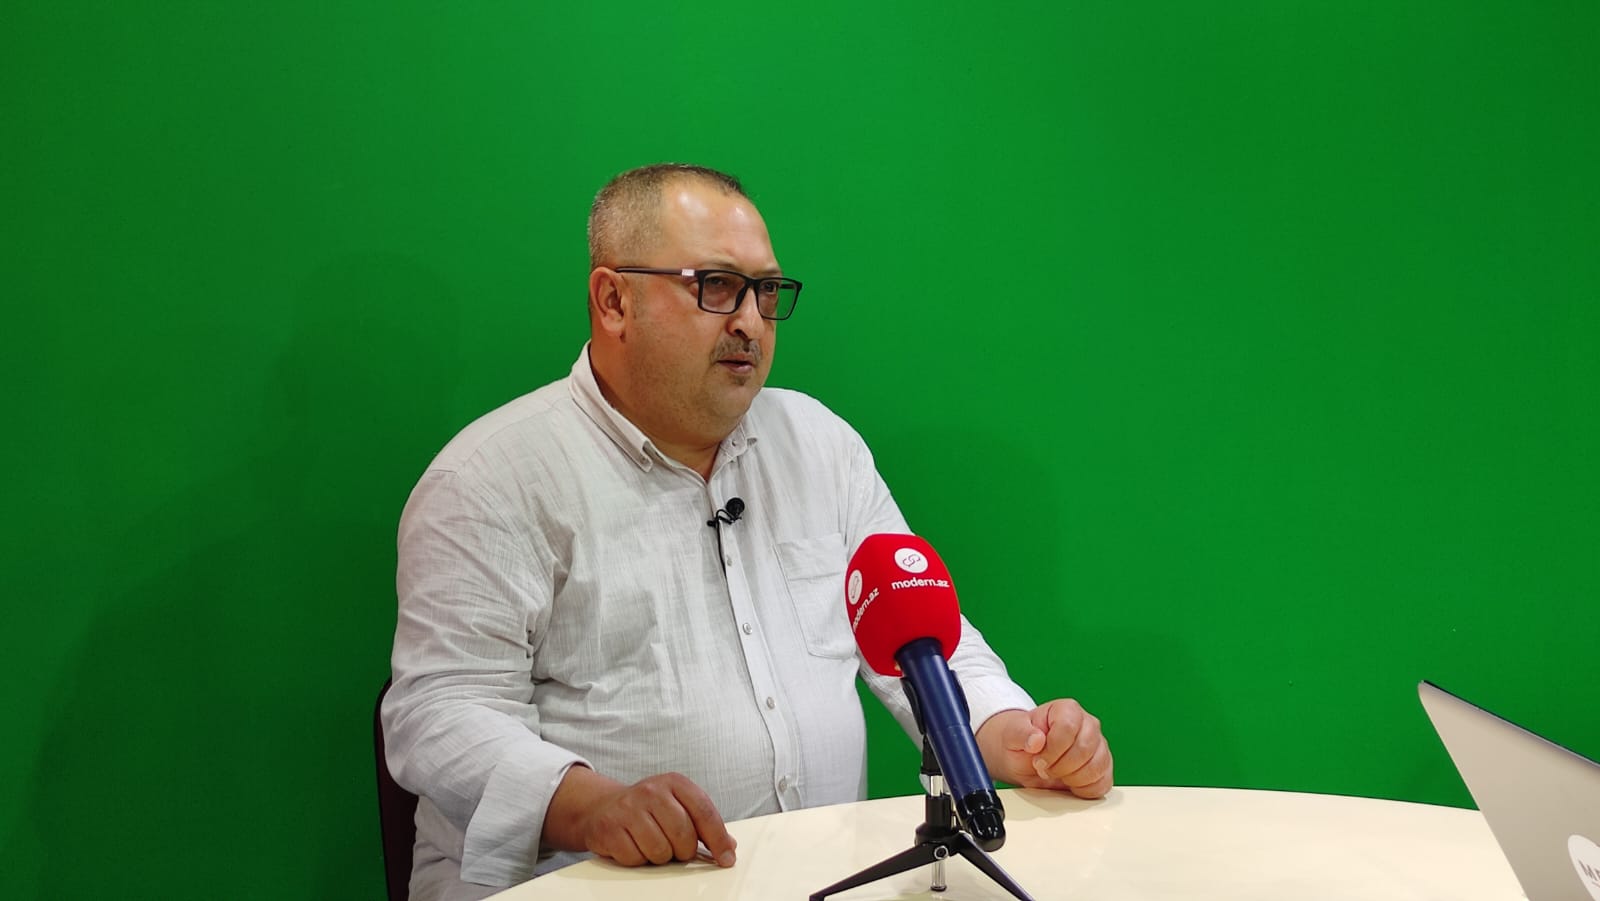 Alanyalı jurnalistlər Bakıda: Özümüzü evimizdəki kimi hiss edirik - MÜSAHİBƏ